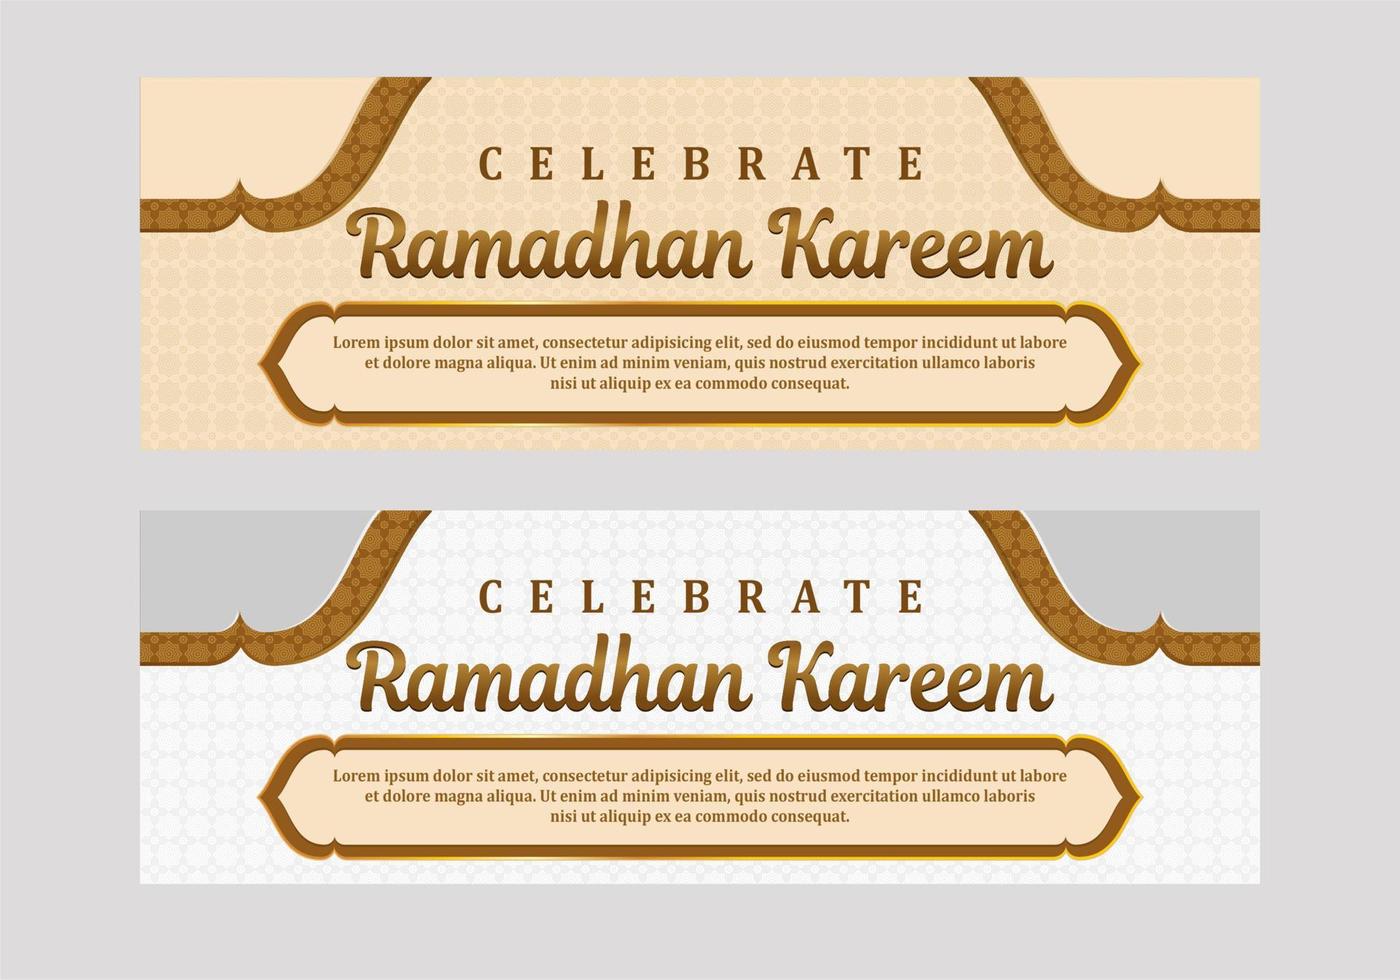 weiche farbe ramadan kareem banner vorlage vektor